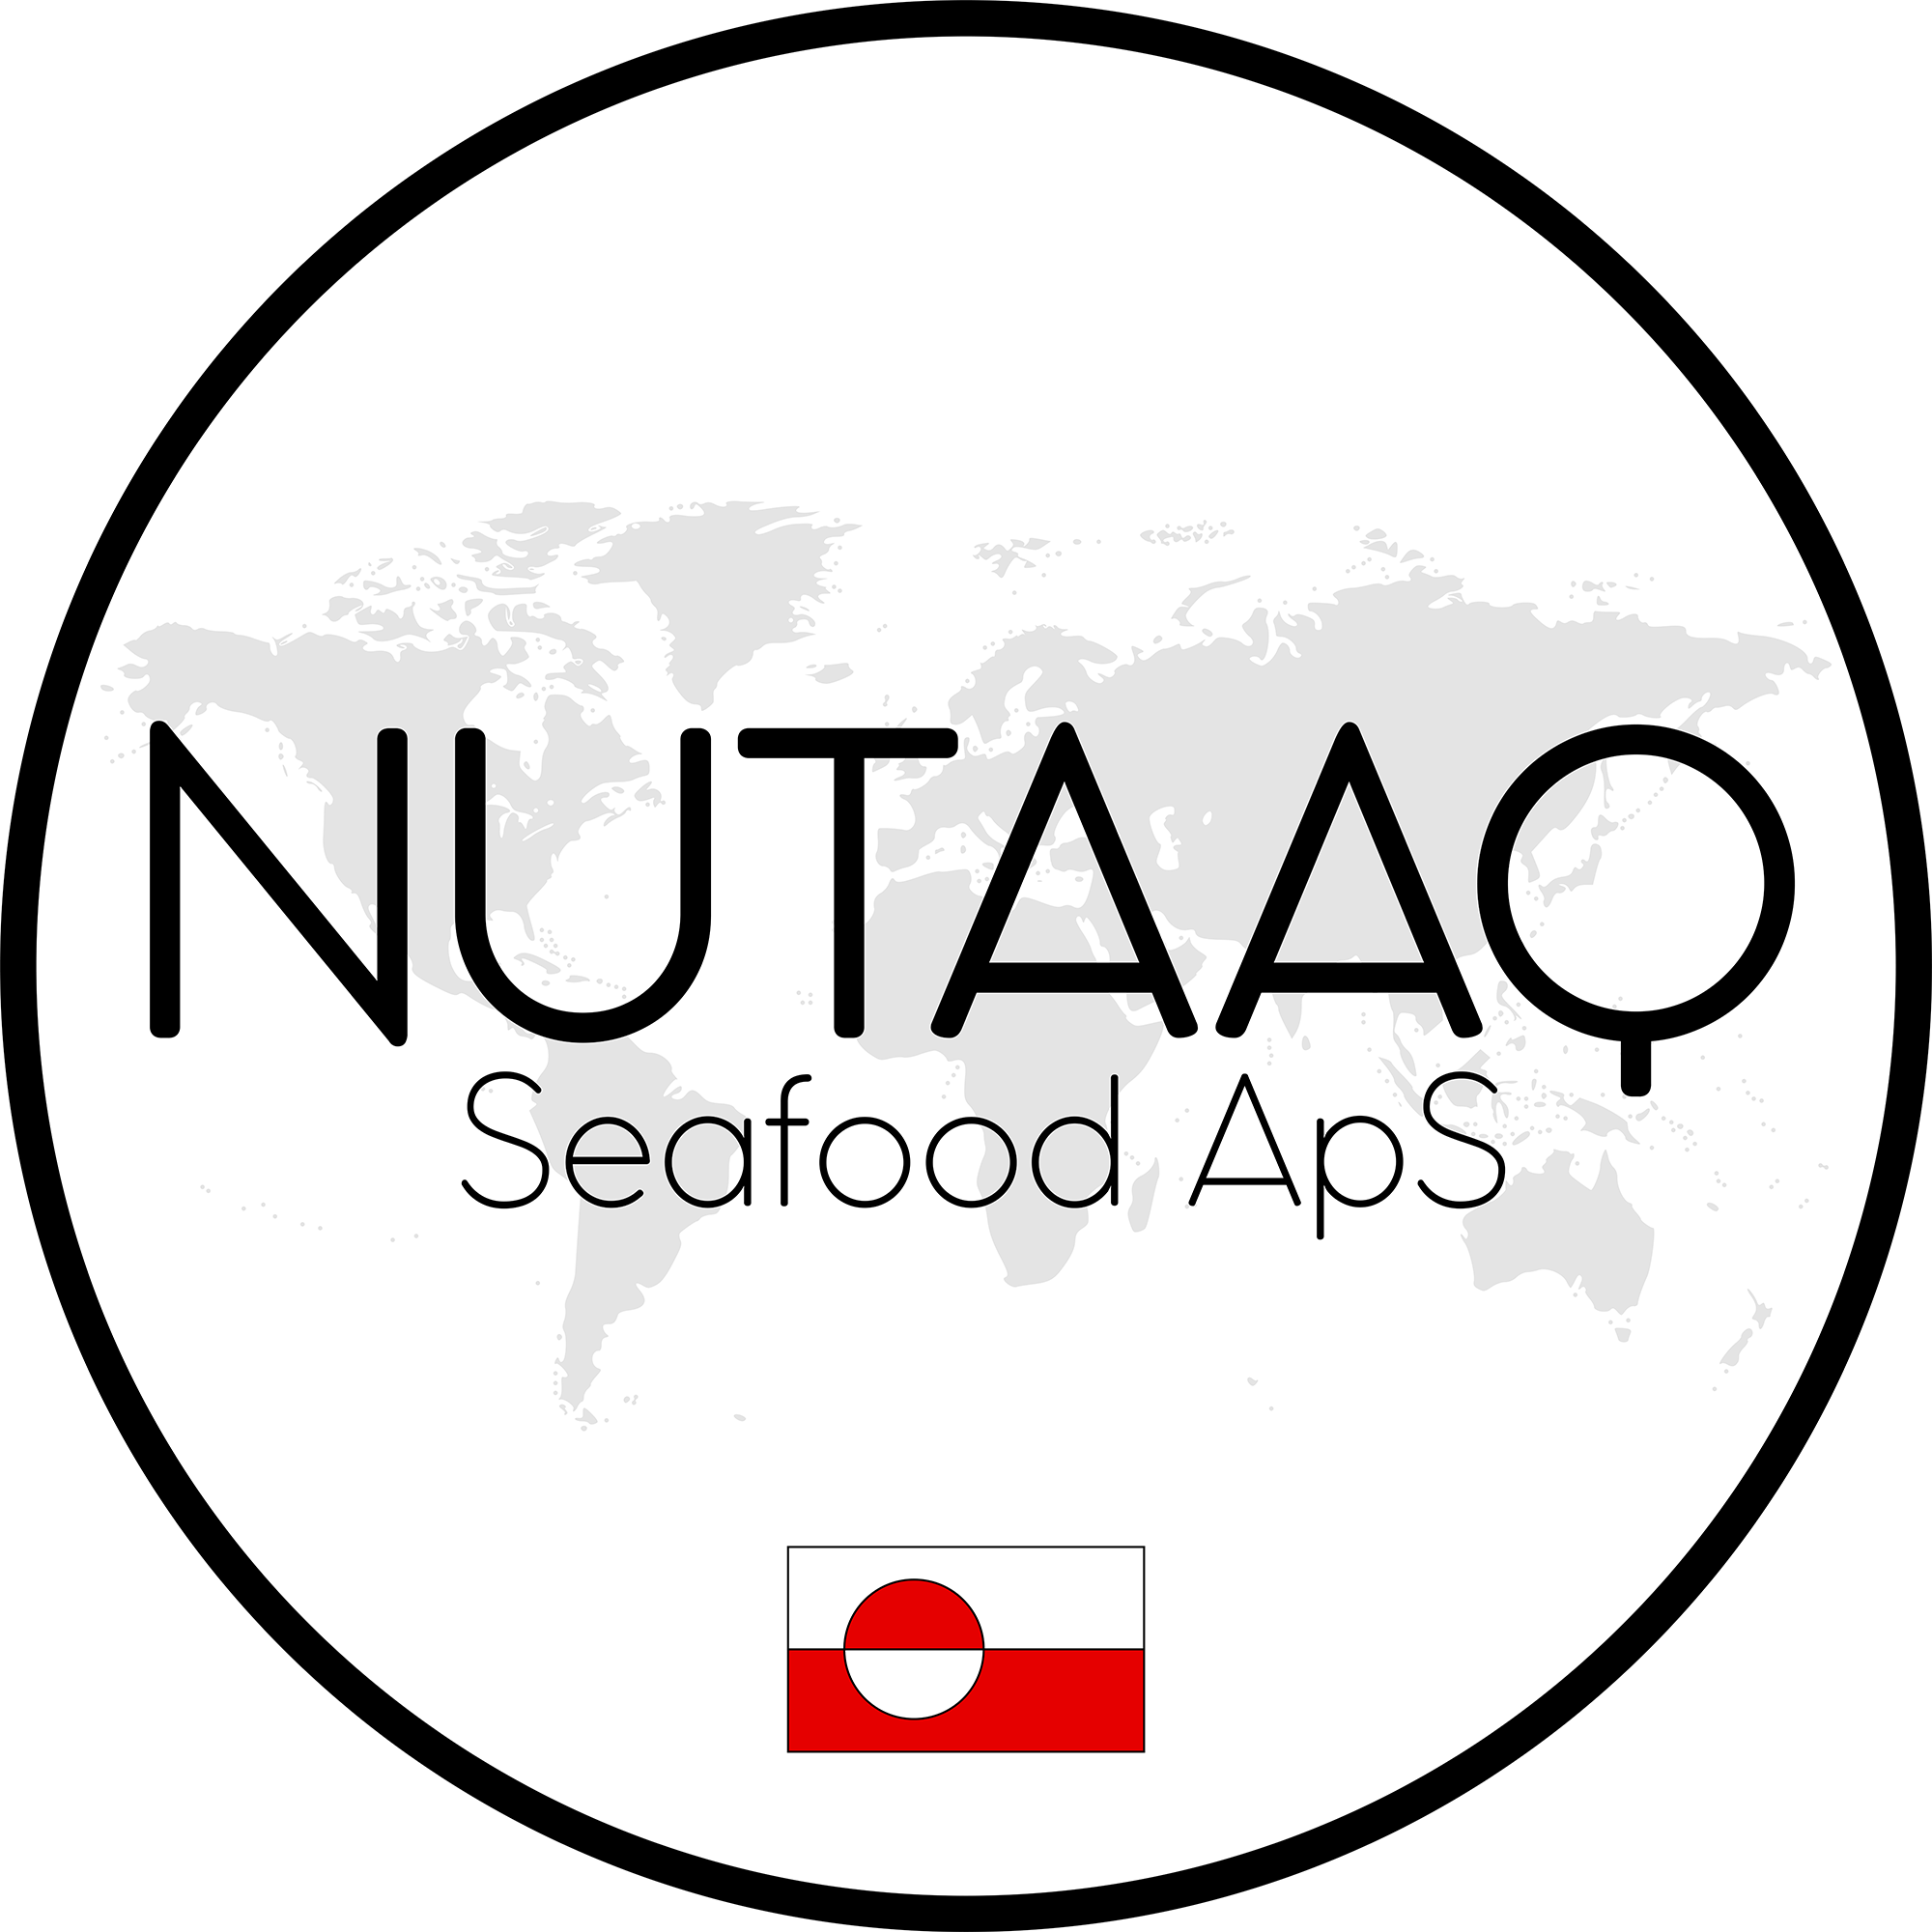 Nutaaq Seafood